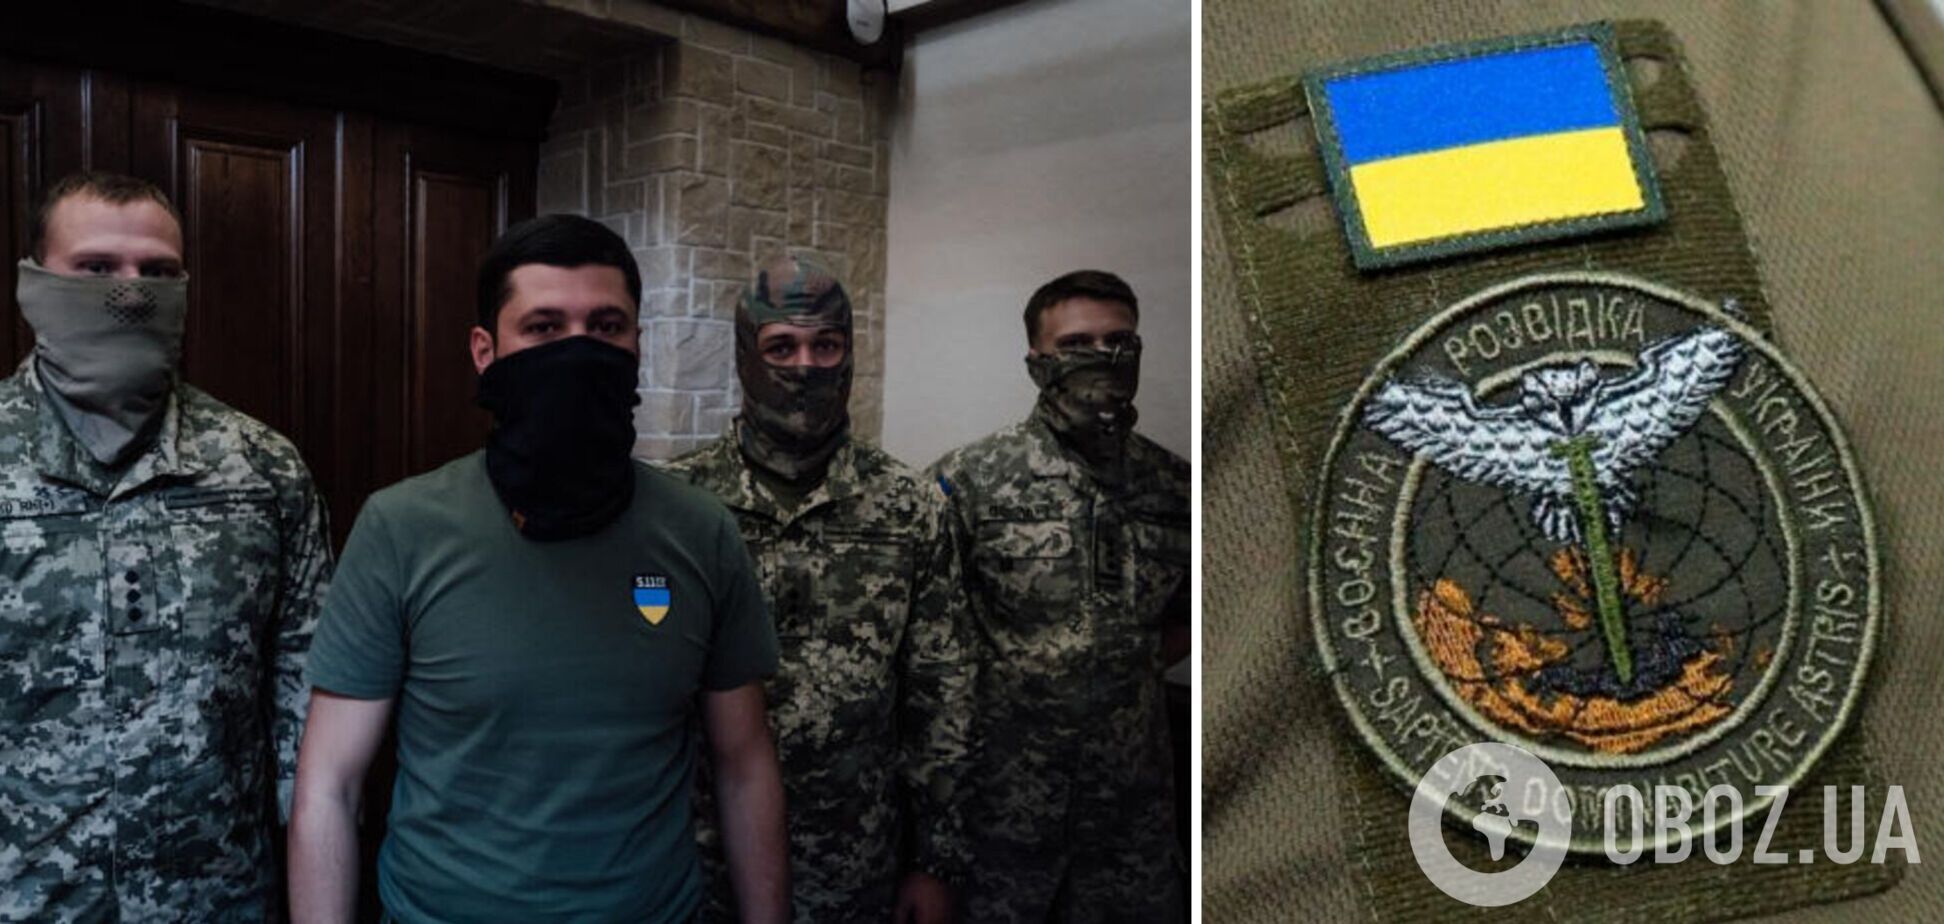 'Многие ребята хотели с нами, но места хватило не всем': бойцы ГУР рассказали о высадке в Крыму в День Независимости